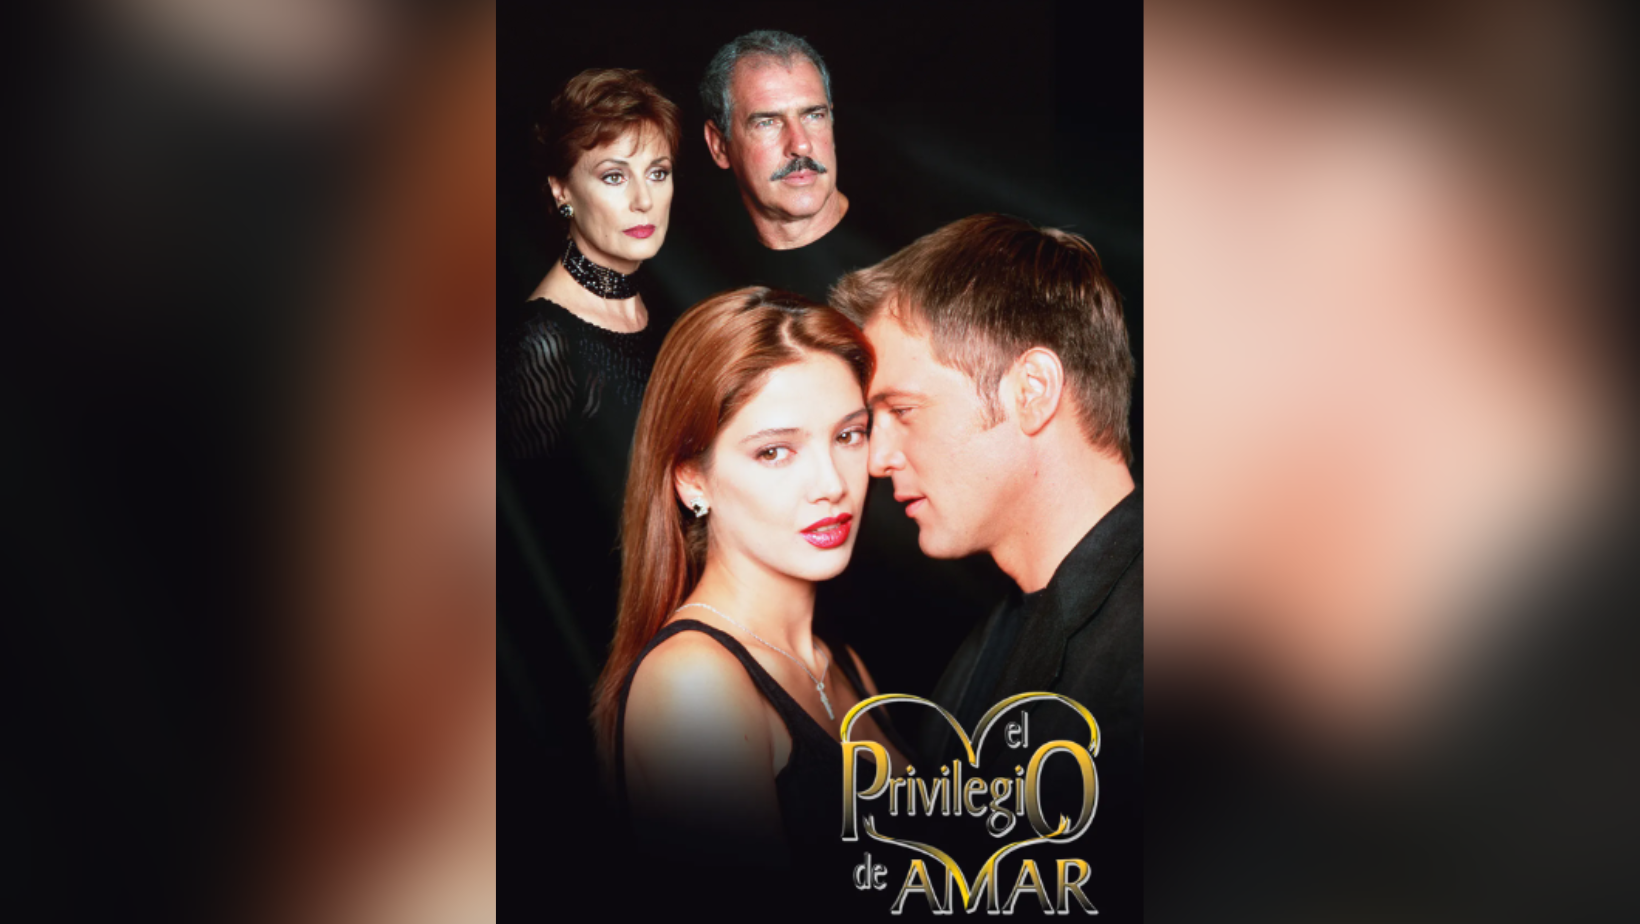 El Privilegio de Amar: El clásico de las telenovelas cumple 25 años